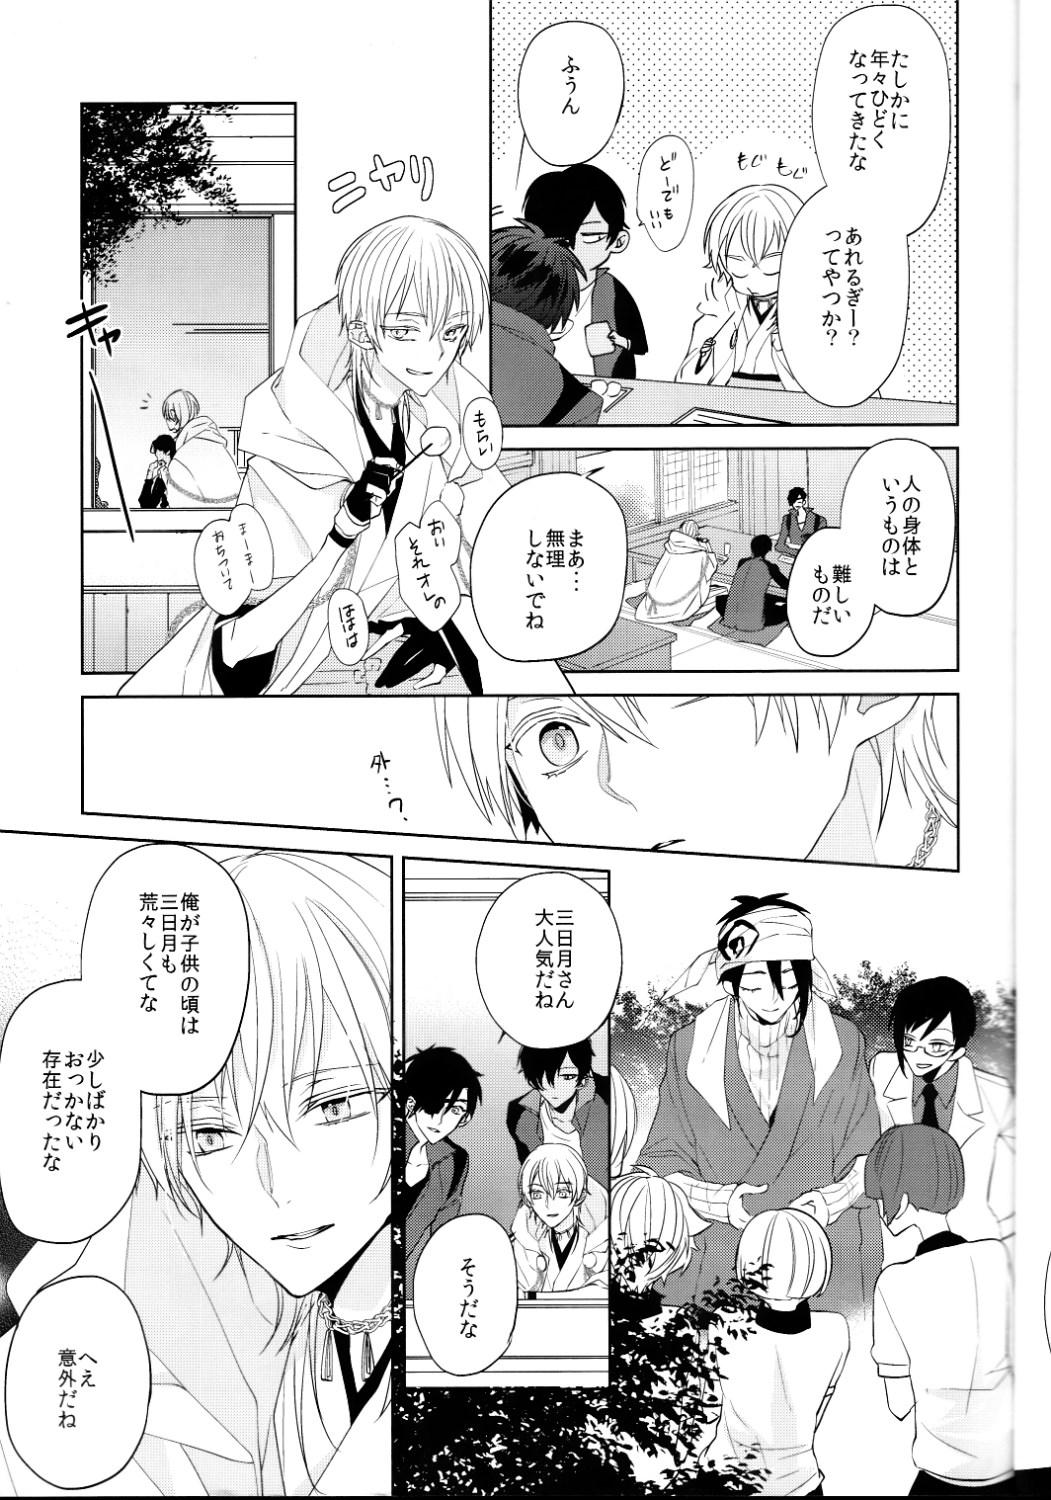 Bang Bros Anata no Karada ni Kizamareta Rindou no Hana - Touken ranbu Group - Page 12